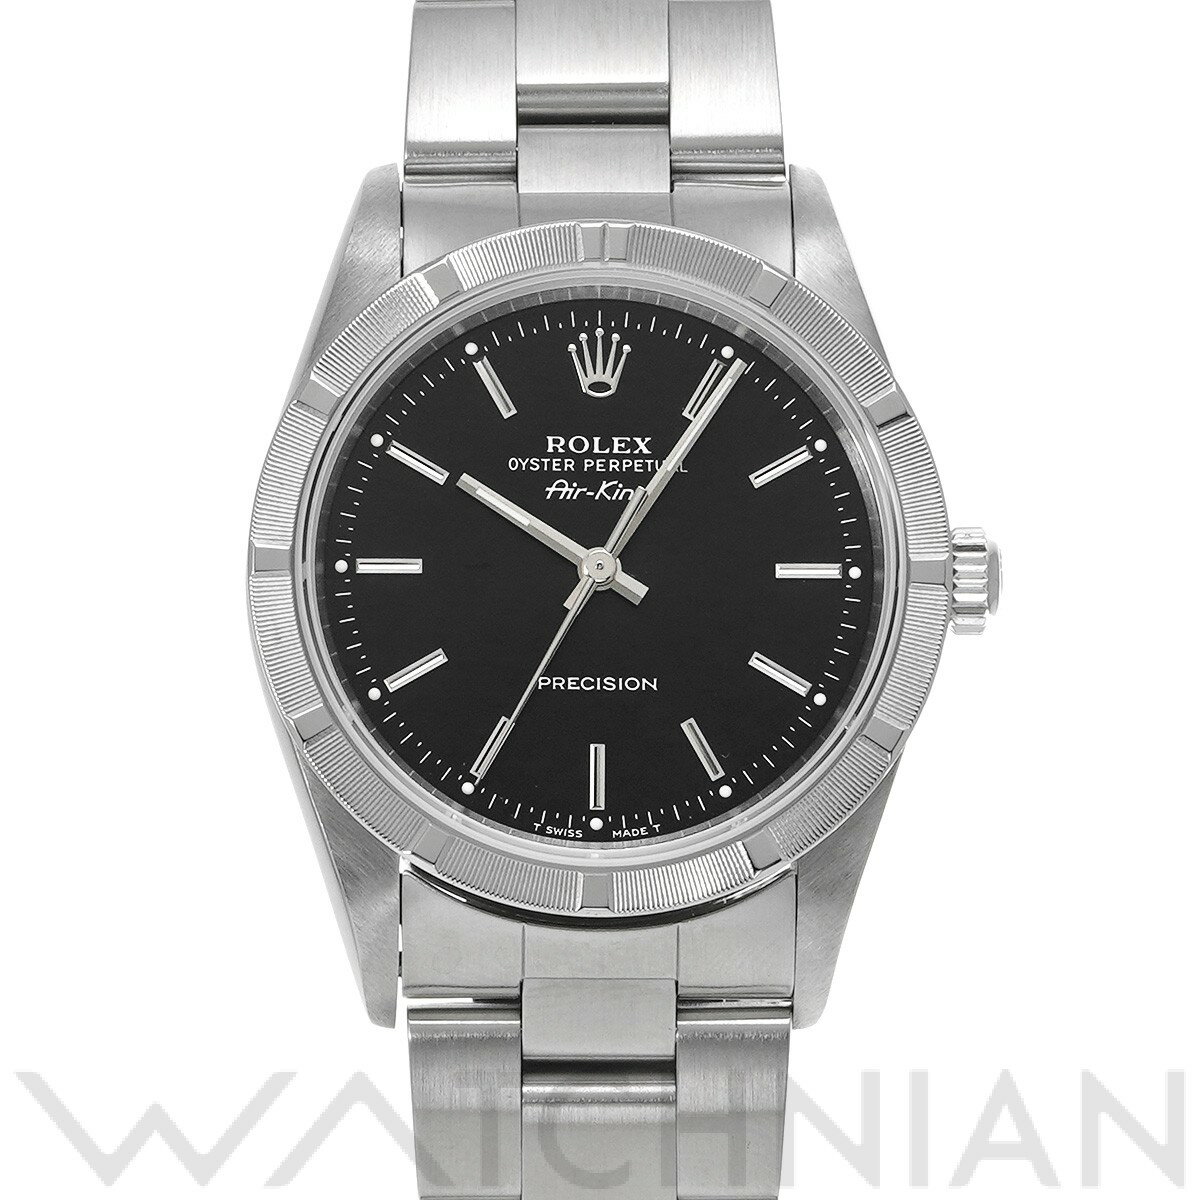 【ローン48回払い無金利】【中古】 ロレックス ROLEX エアキング 14010 U番(1997年頃製造) ブラック メンズ 腕時計